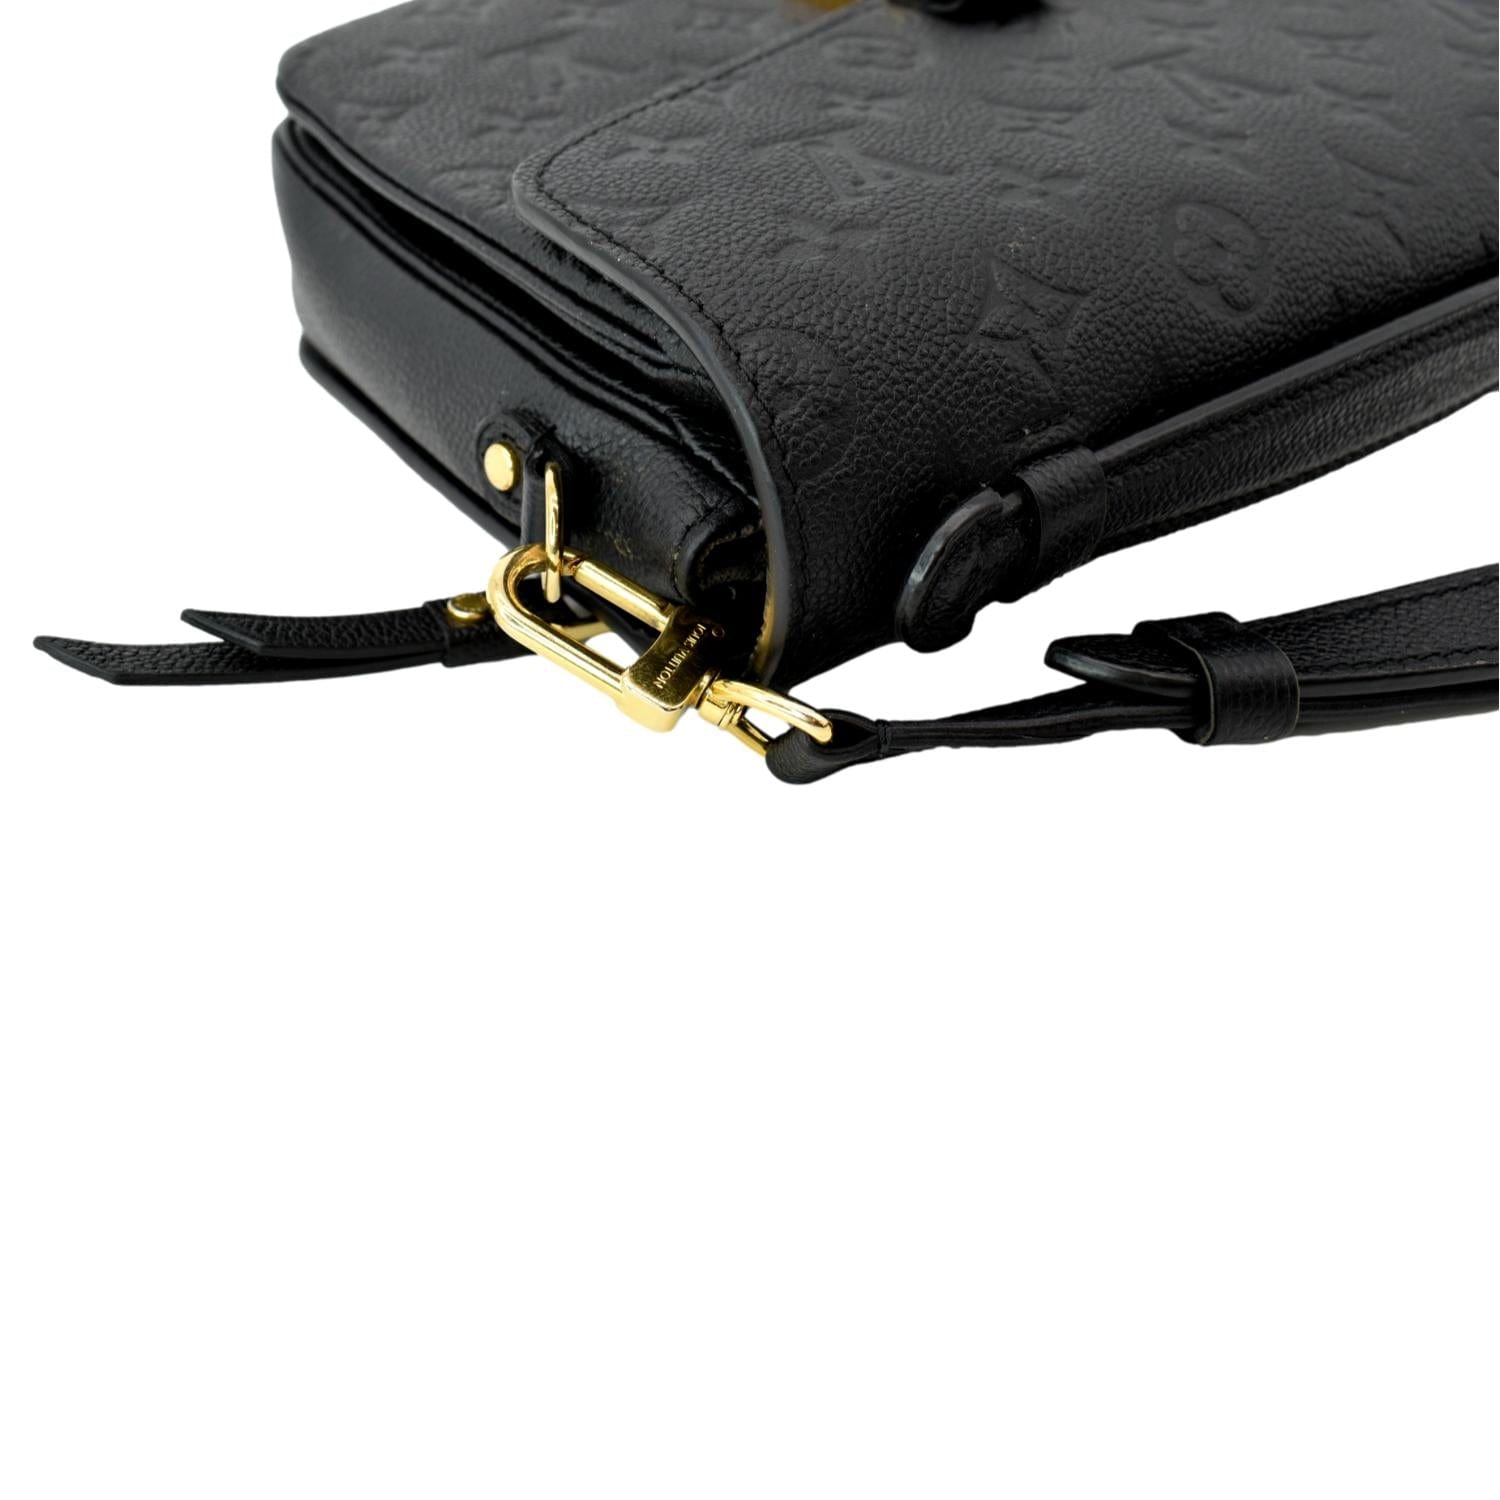 Louis+Vuitton+Pochette+M%C3%A9tis+Crossbody+Black+Leather for sale